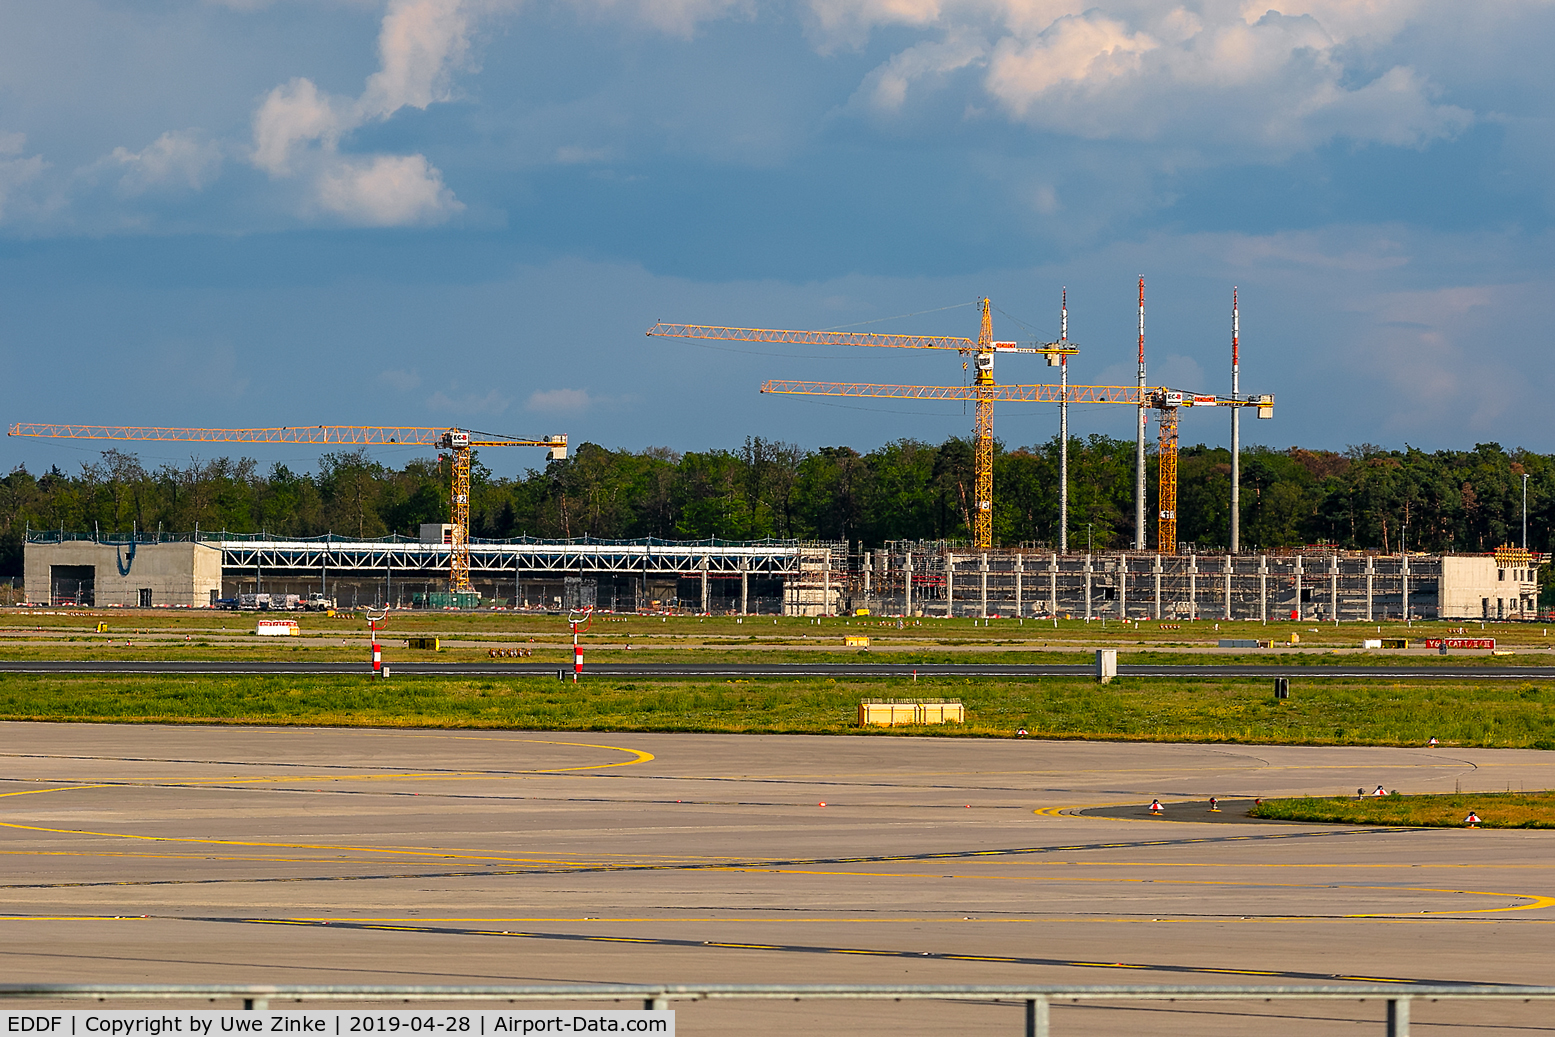 Frankfurt International Airport, Frankfurt am Main Germany (EDDF) - It will be the new fire station